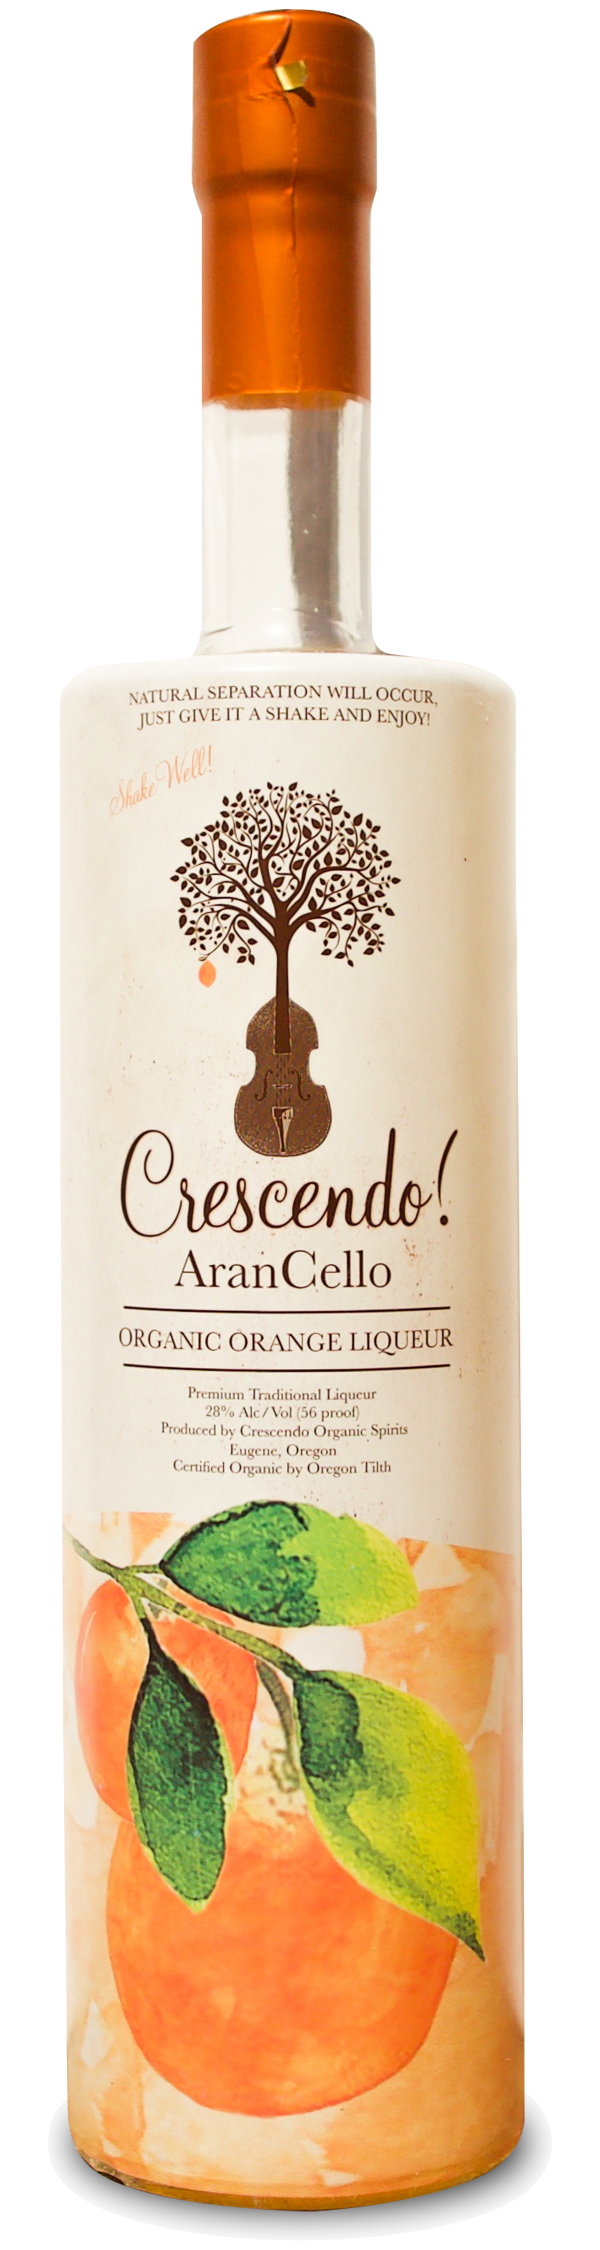 Crescendo AranCello Organic Orange Liqueur